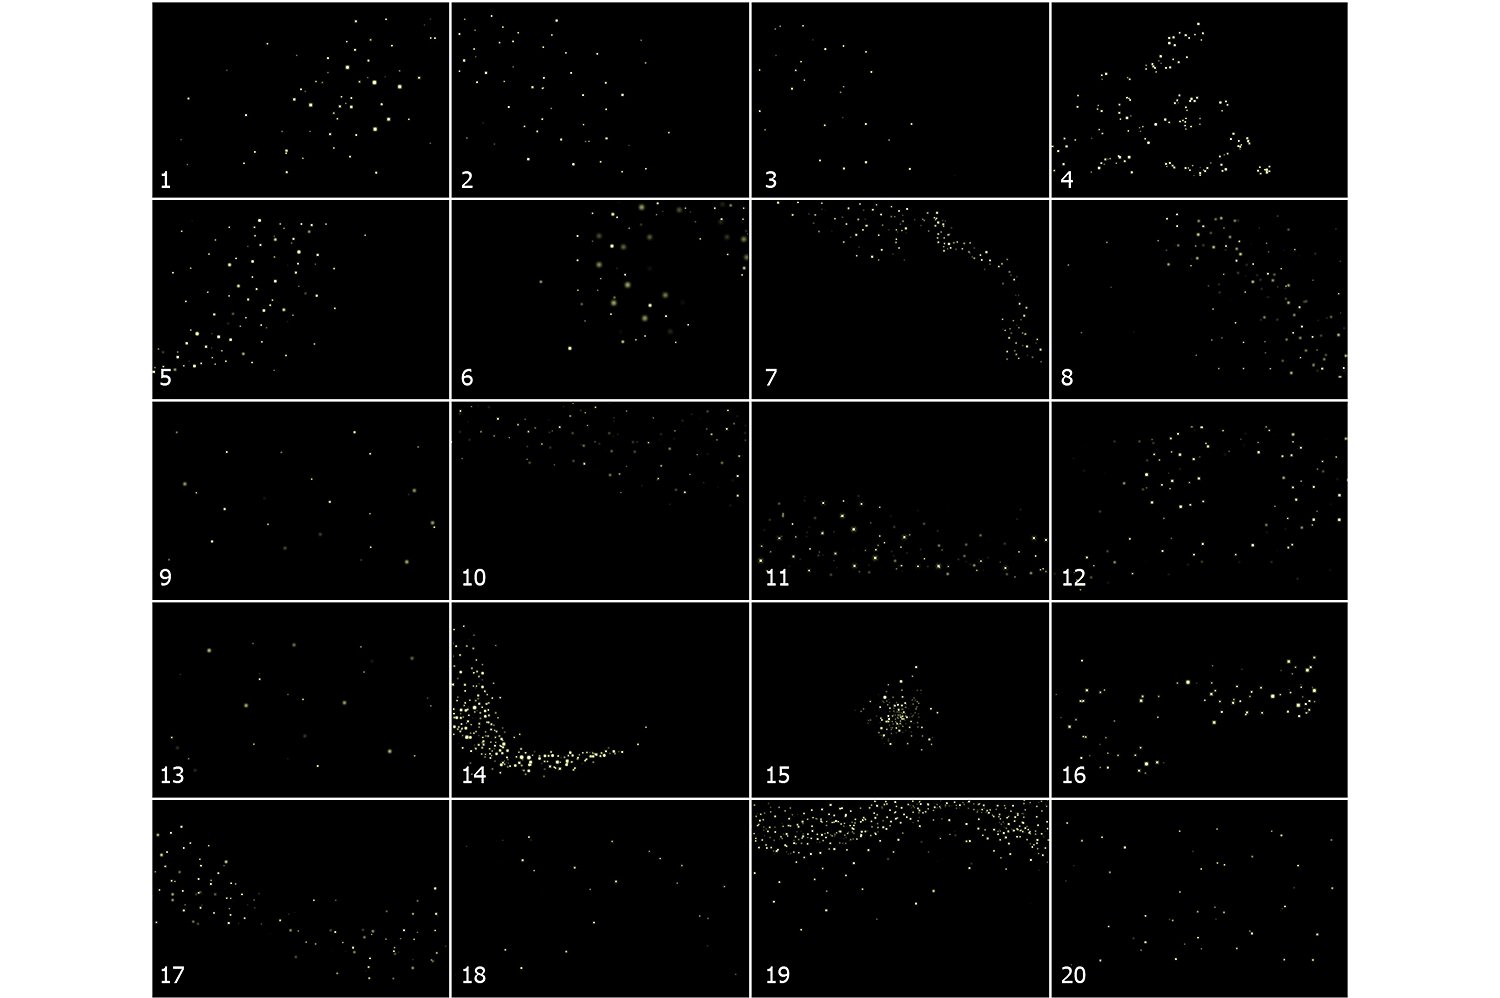 超高像素火花特效叠层背景 5K Fireflies Vol. 1插图3